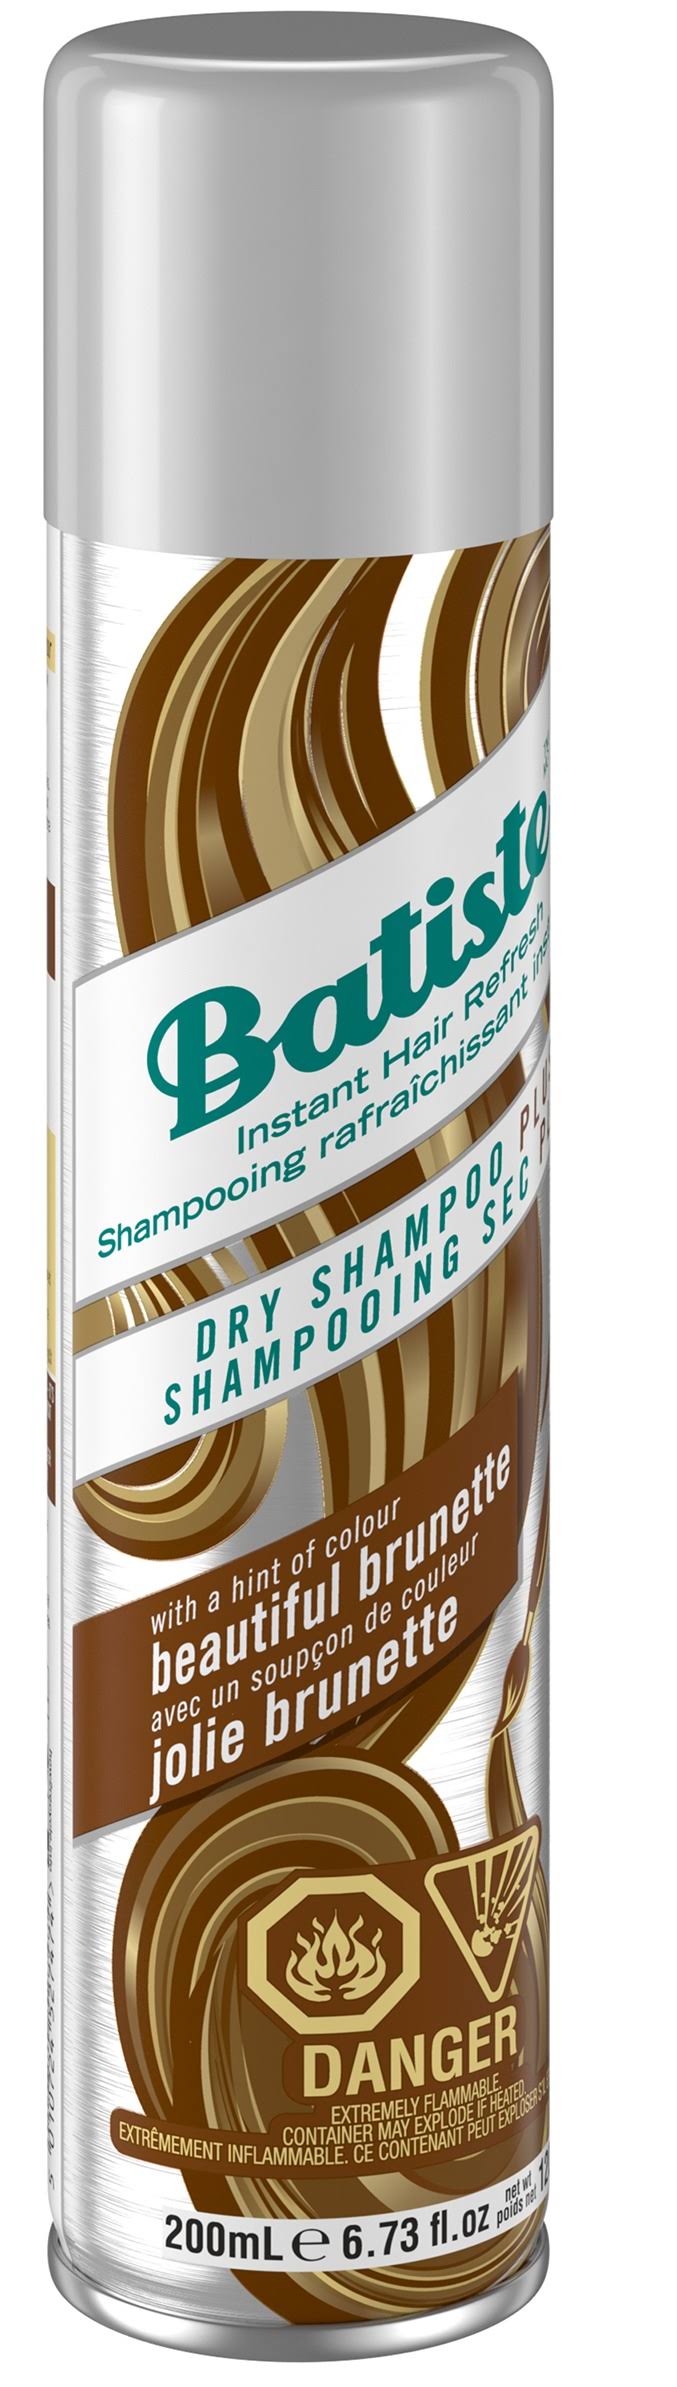 Batiste Dry Shampoo, Plus - 6.73 fl oz